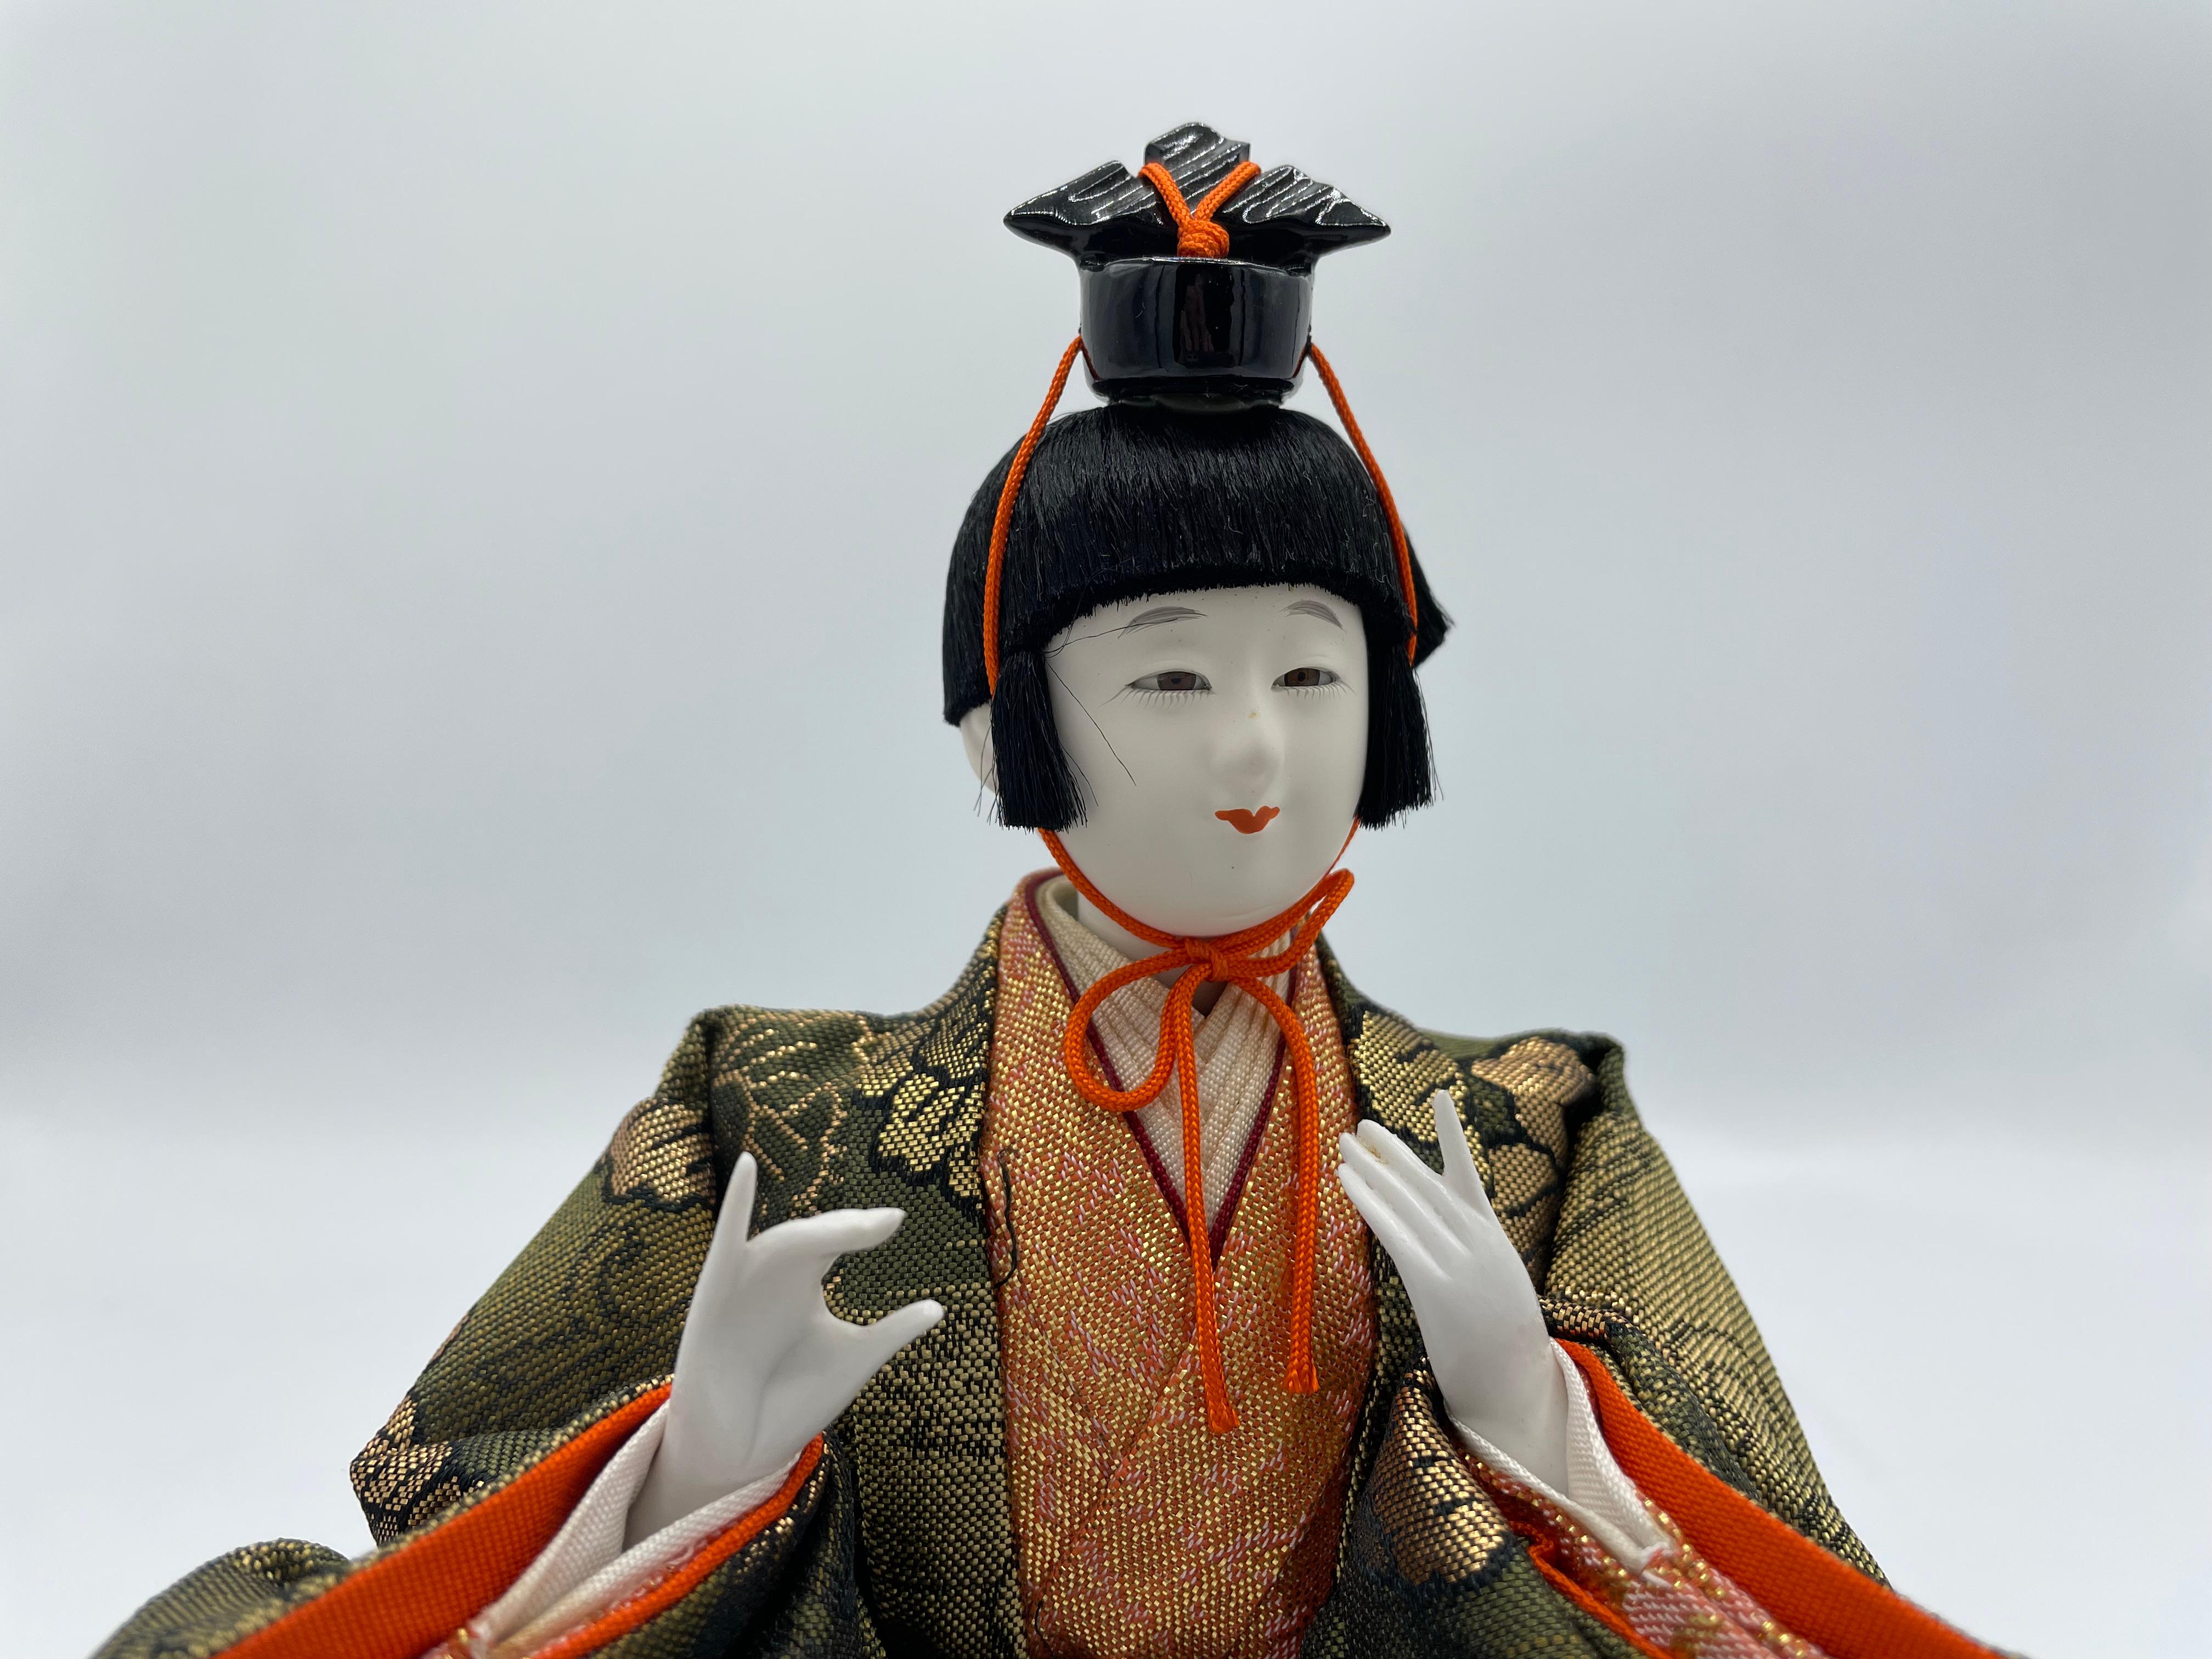 Dies ist eine Puppe, die wir für den Hinamatsuri-Tag verwenden. Diese Person ist einer von Goninbayashi.
Diese Person hatte eine Flöte, aber wir finden keine mehr. Es wird also nicht mit einer Flöte geliefert.
Diese Puppe wurde aus Kunststoff,